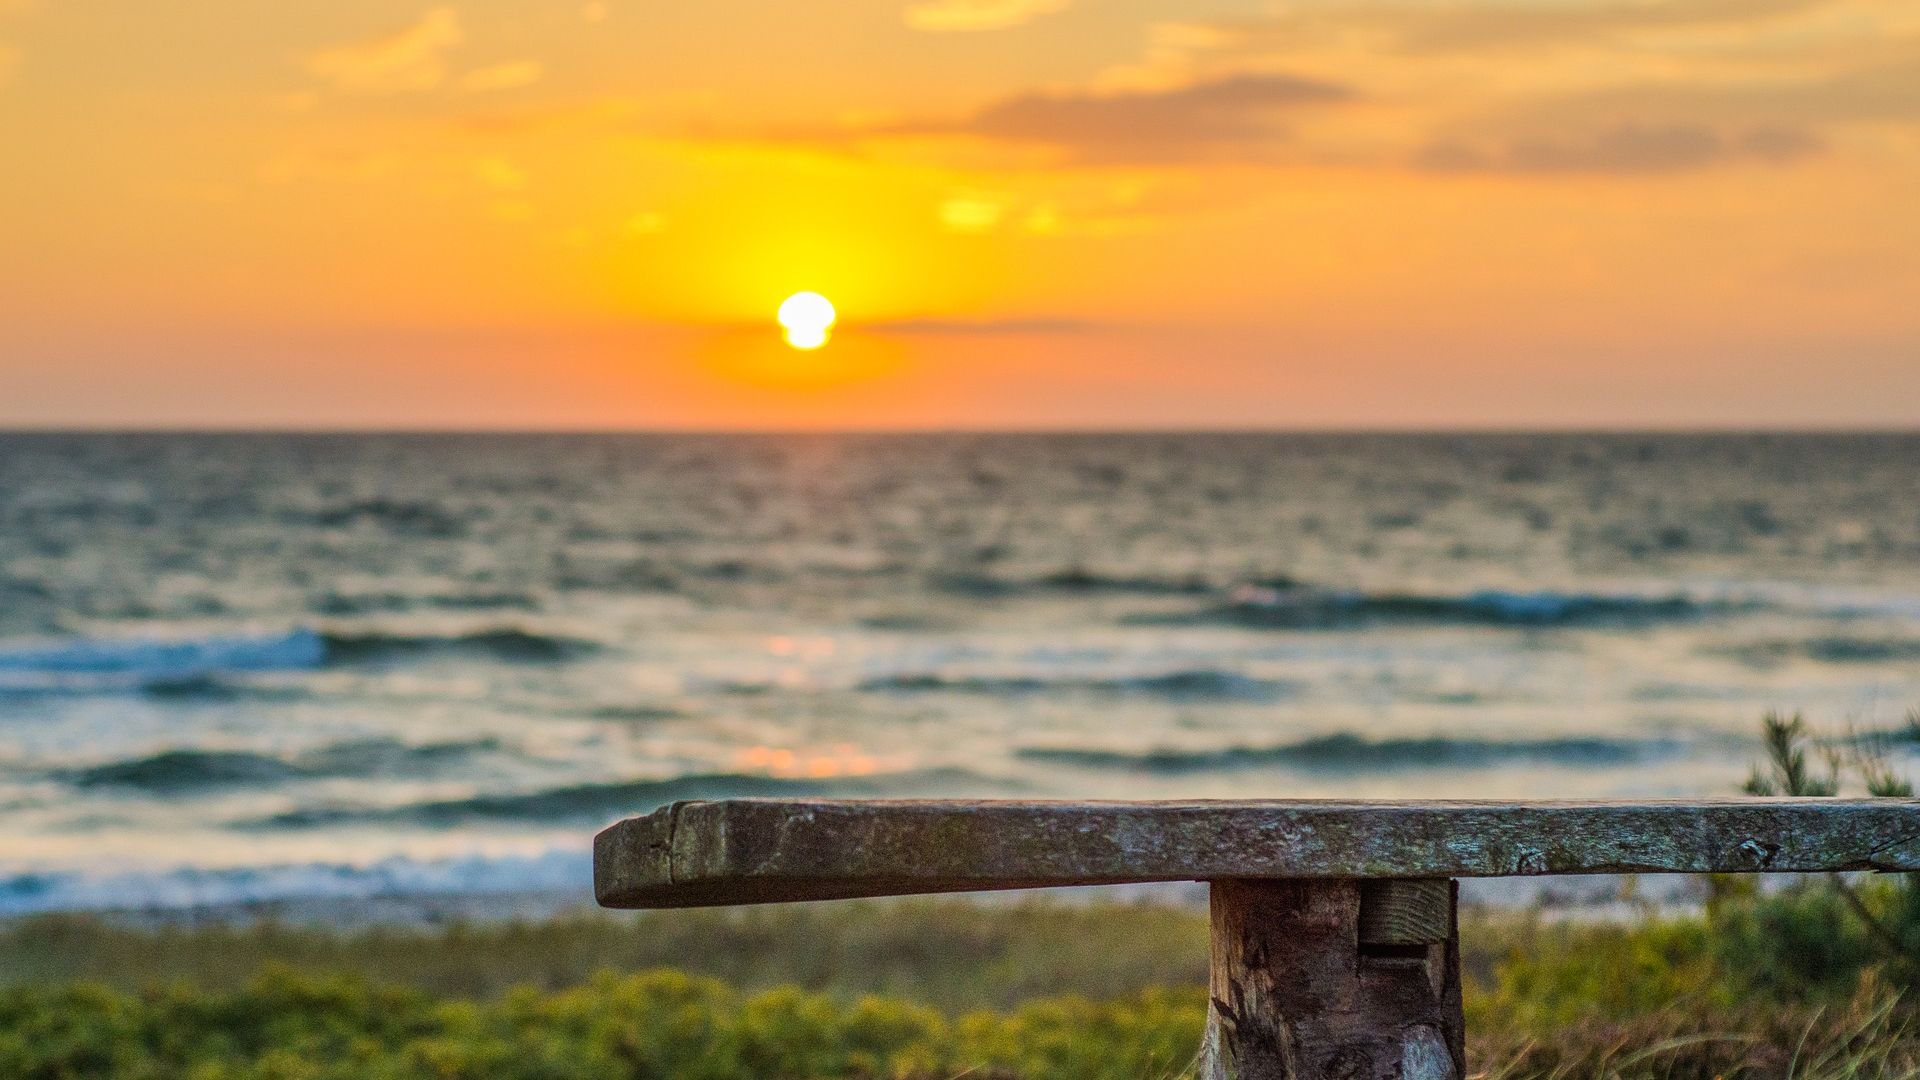 Desktop Wallpaper Sun, Sunset, Beach, Bench, Nature, Sea, Hd Image